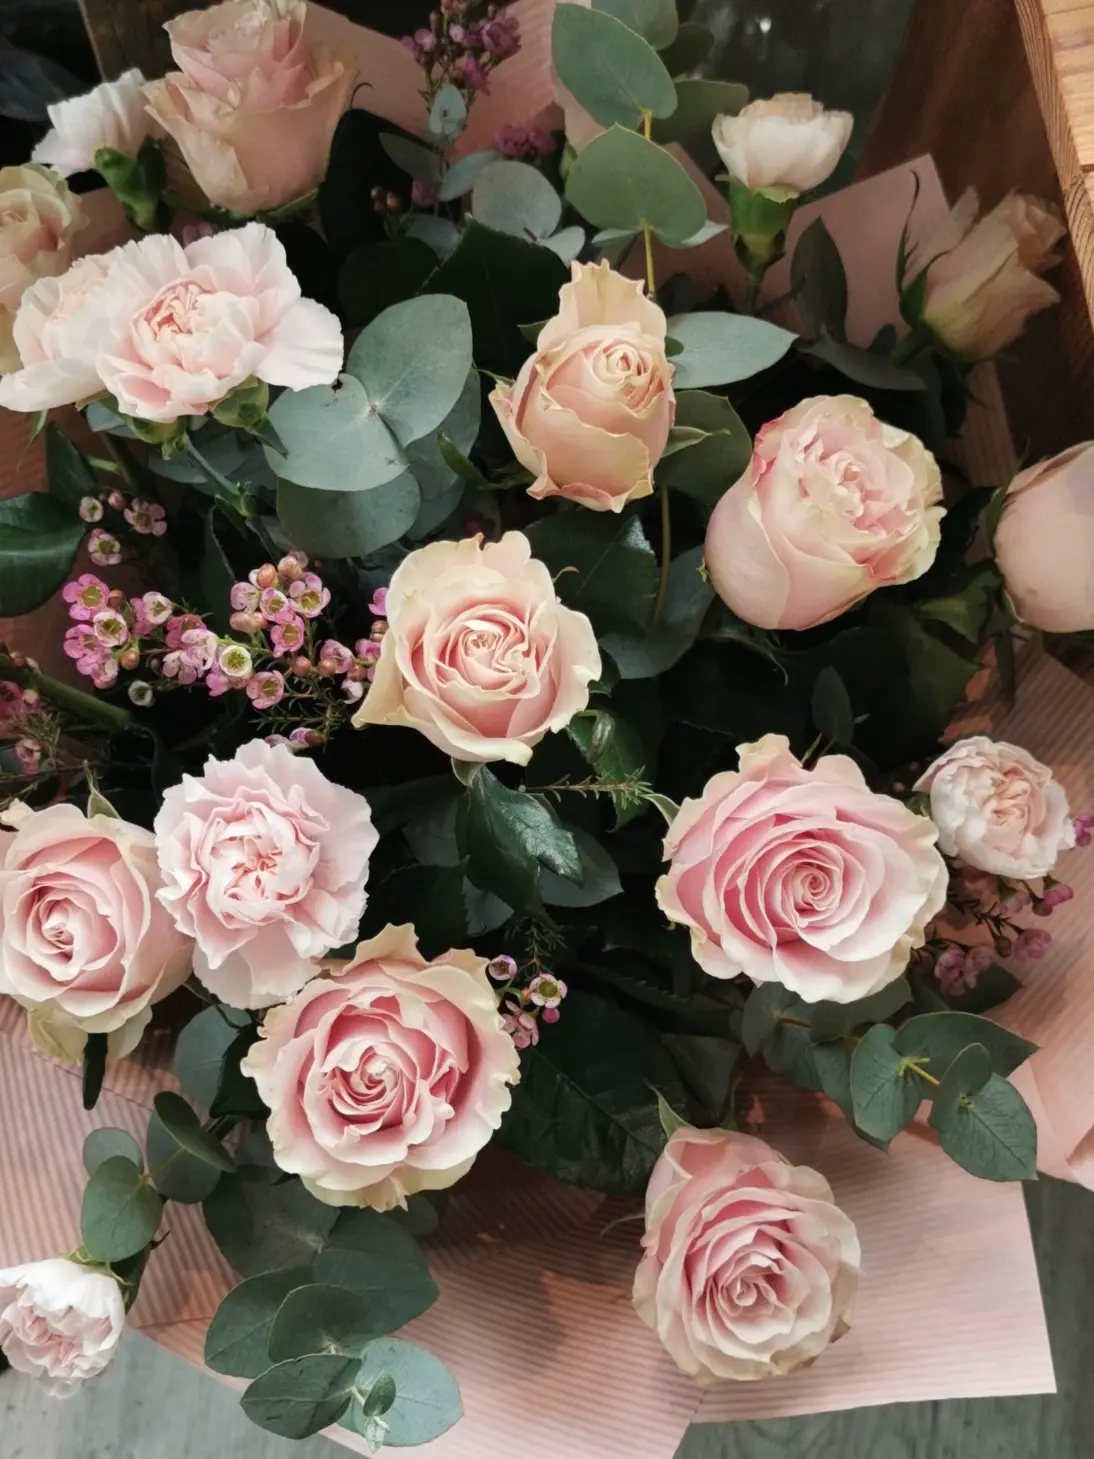 Bukiet z różami to elegancka i romantyczna kompozycja kwiatowa w klasycznym i delikatnym wydaniu.